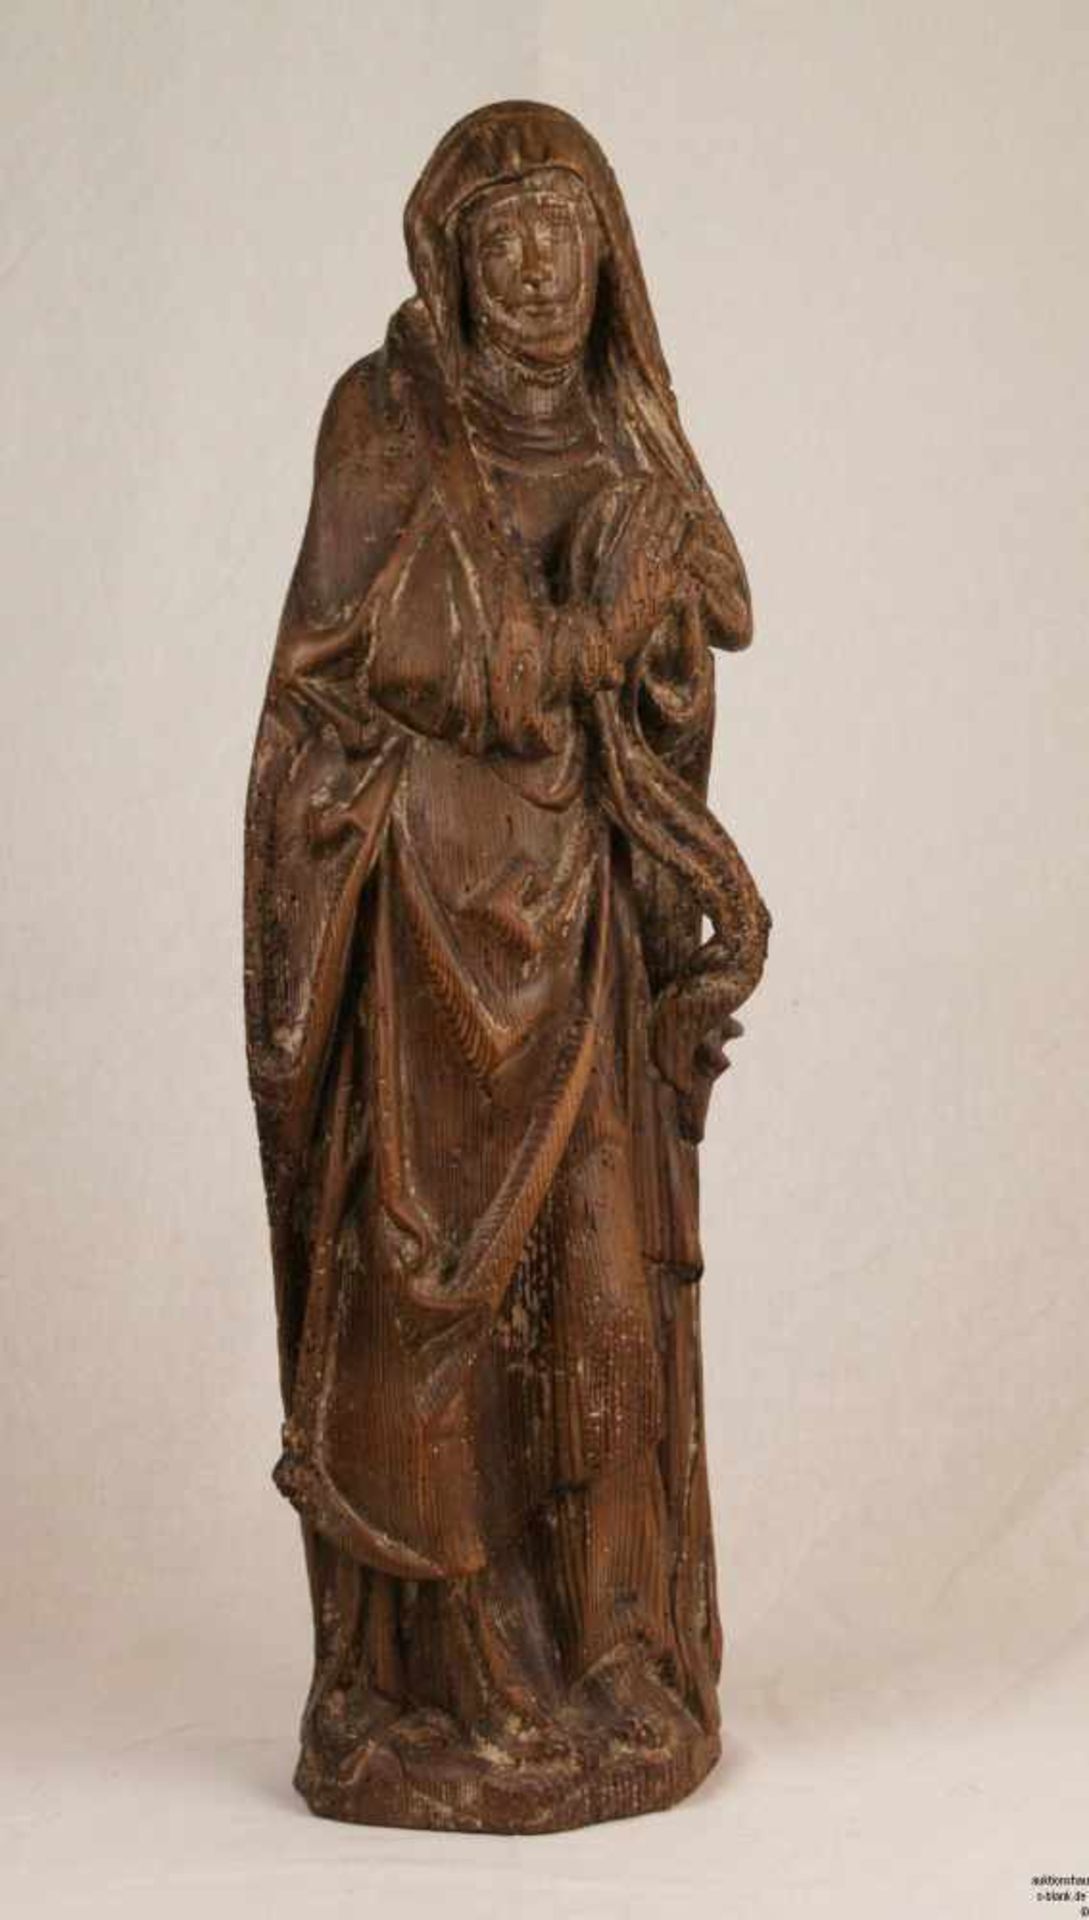 Heilige Anna, eine Schriftrolle umfassend - Holz geschnitzt, geschnitzte Gewandfigur der im leichten